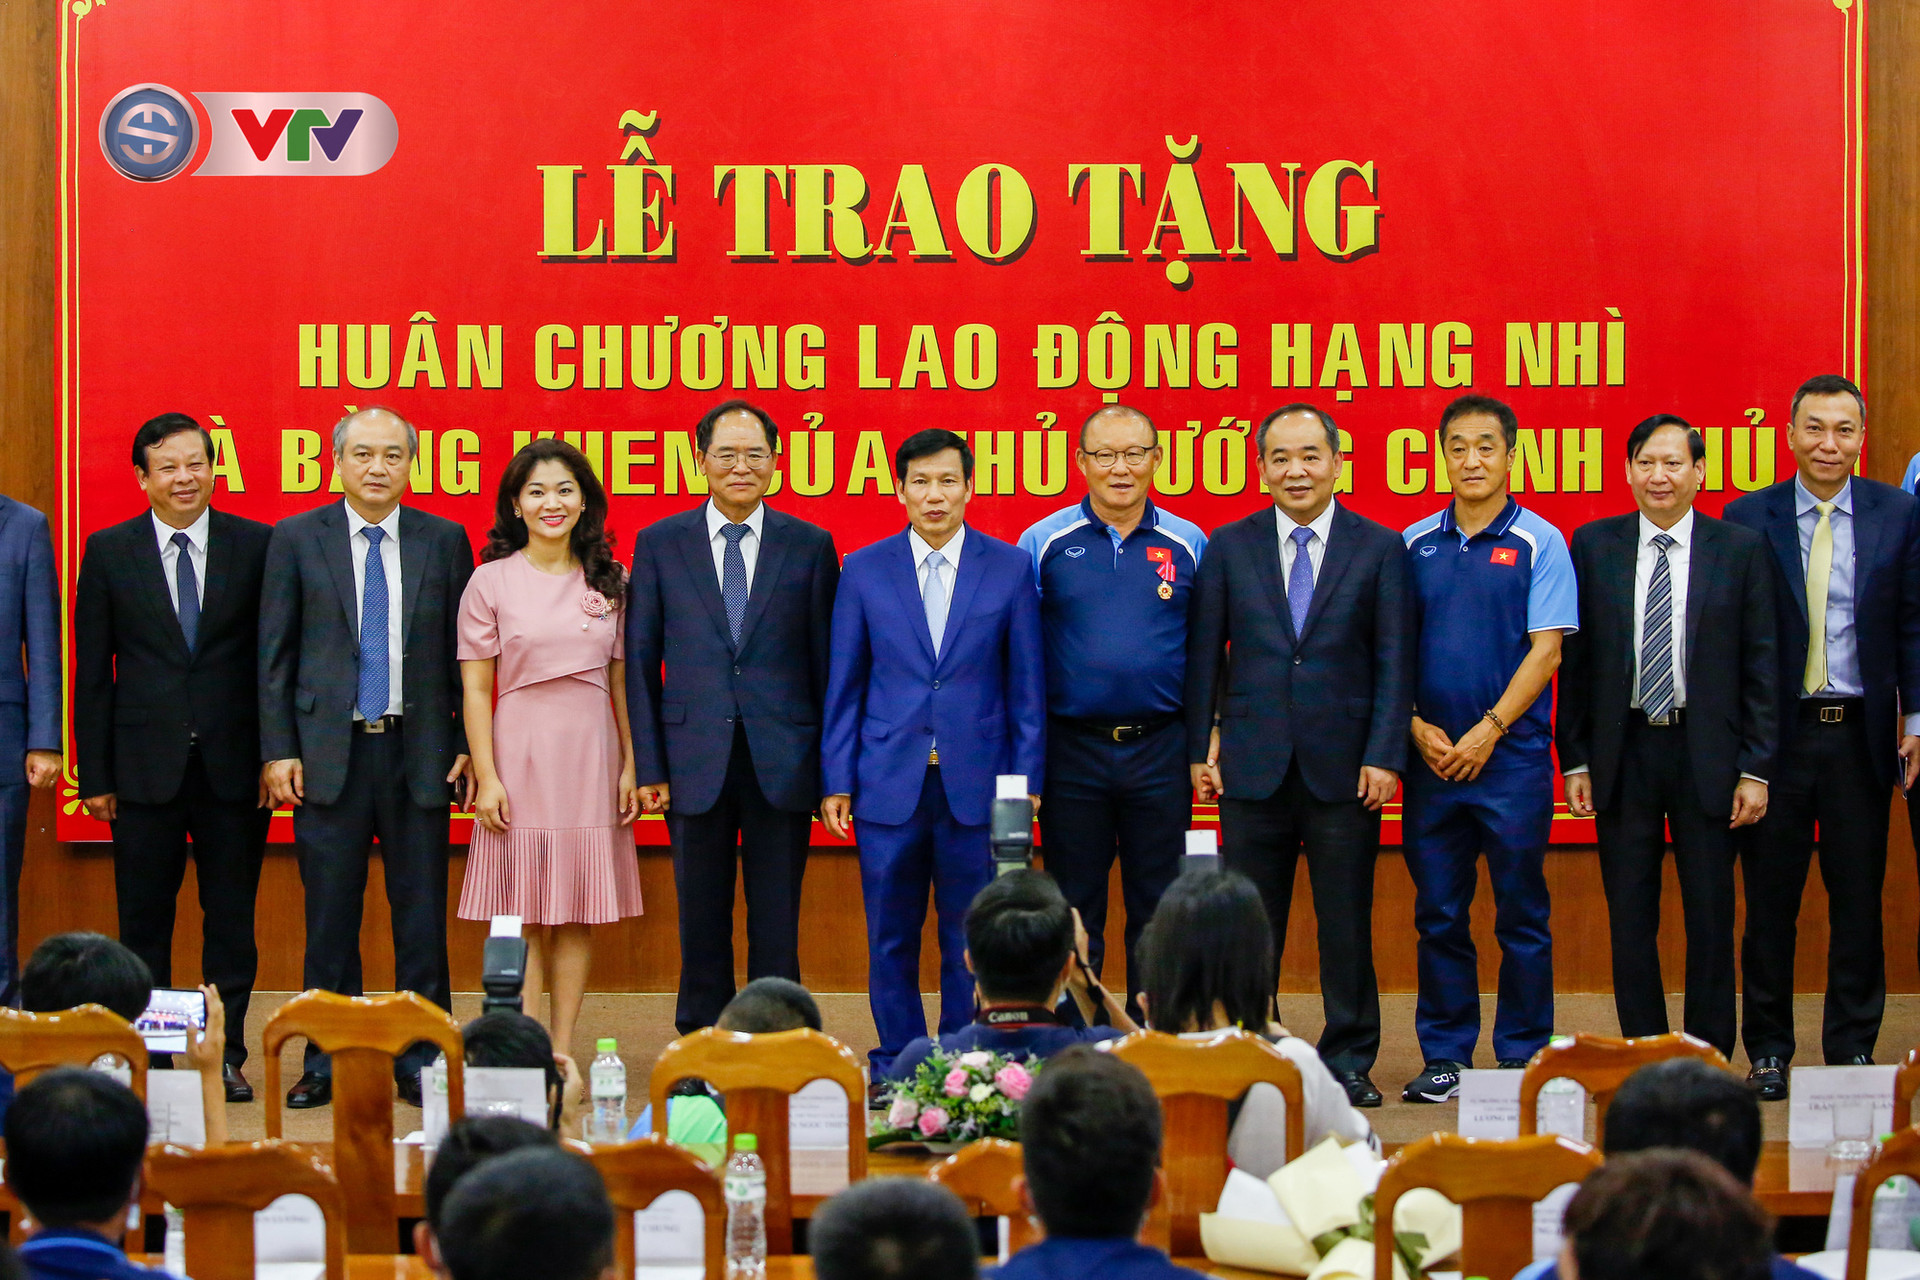 HLV Park Hang Seo nhận vinh dự chưa từng có trong lịch sử bóng đá Việt Nam - Ảnh 1.